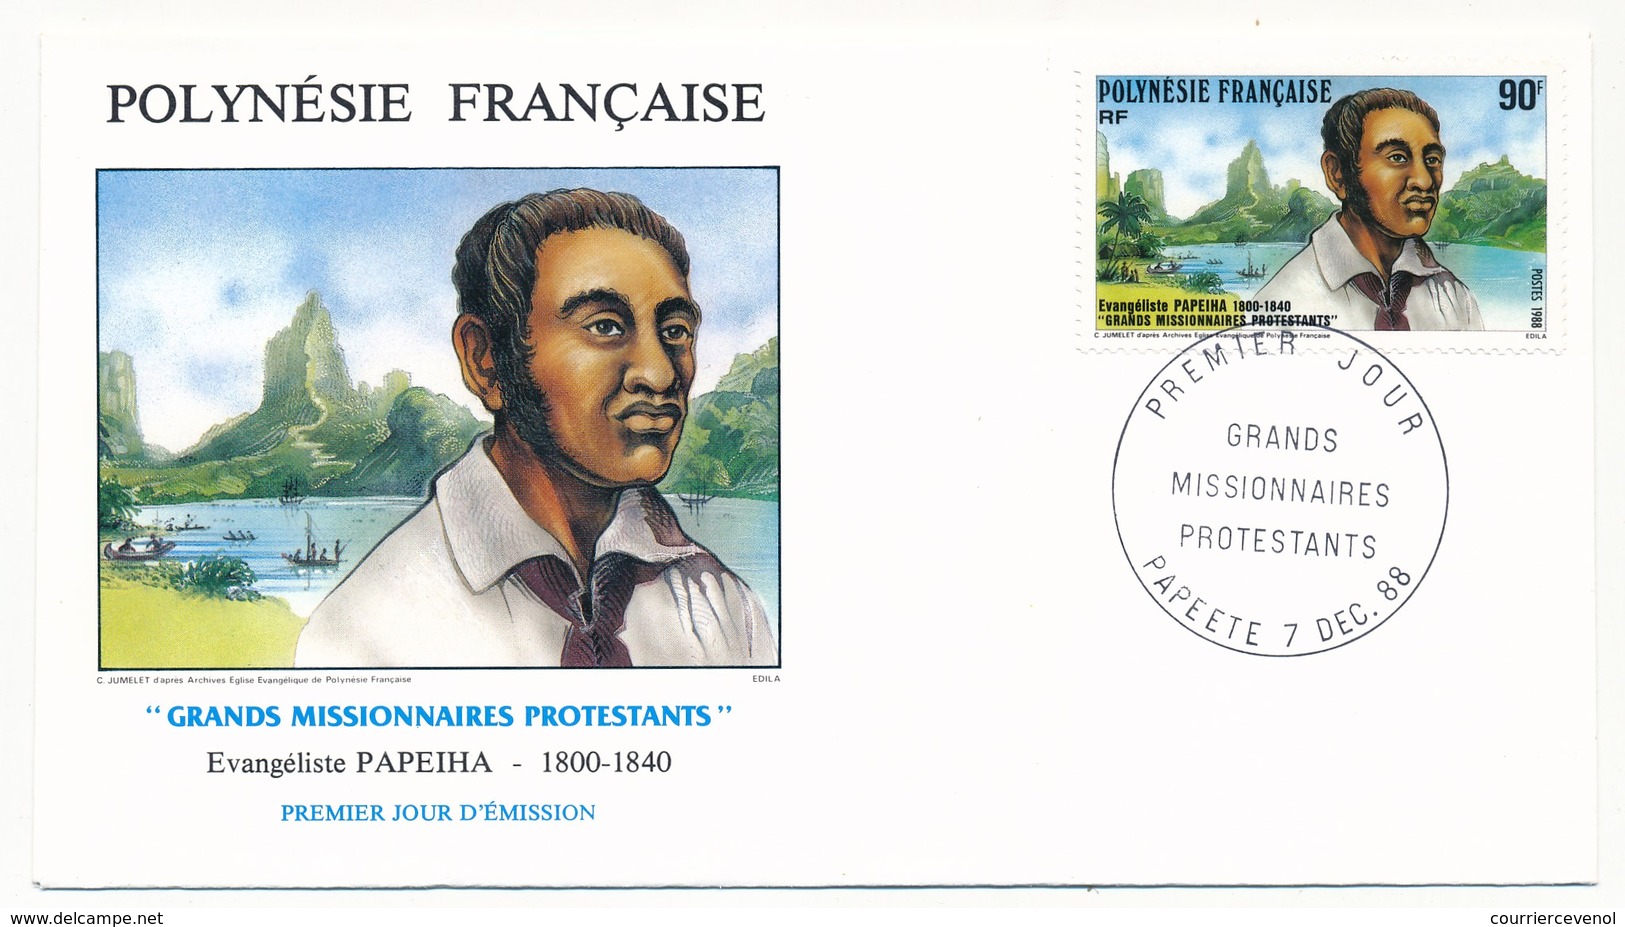 POLYNESIE FRANCAISE - 3 FDC - Grands Missionnaires Protestants - 7 Décembre 1988 - FDC